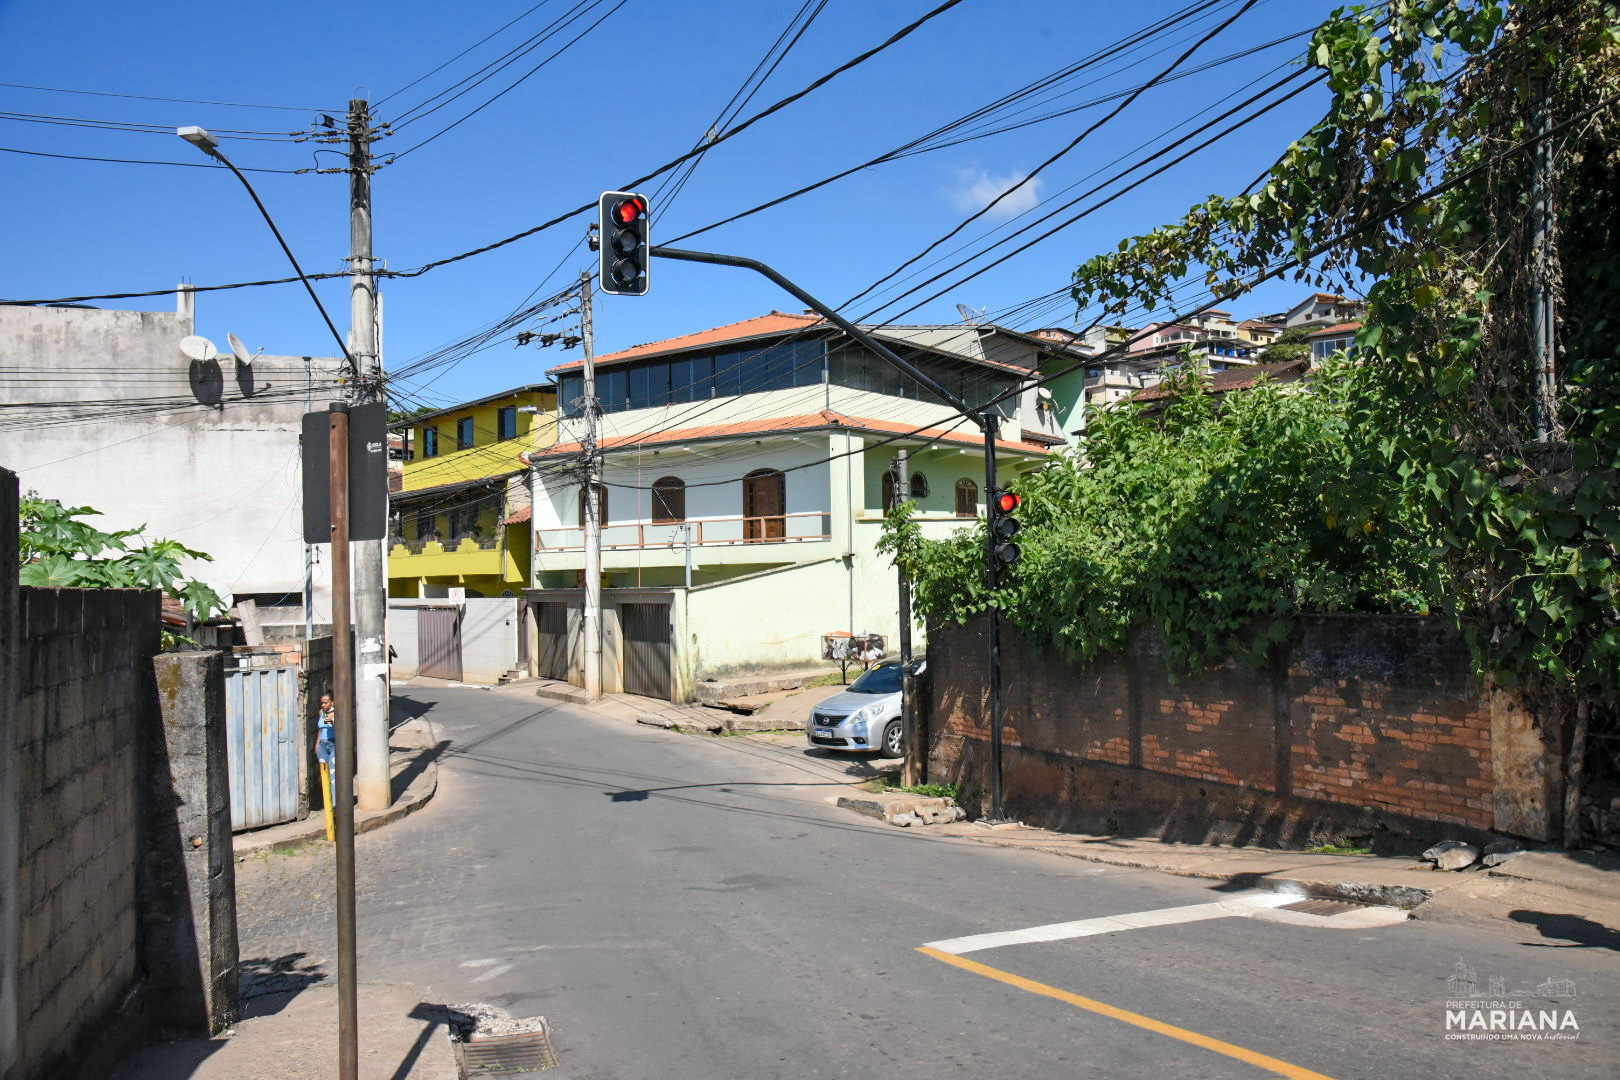 Semáforo da Rua Wenceslau Braz, em Mariana, é ativado